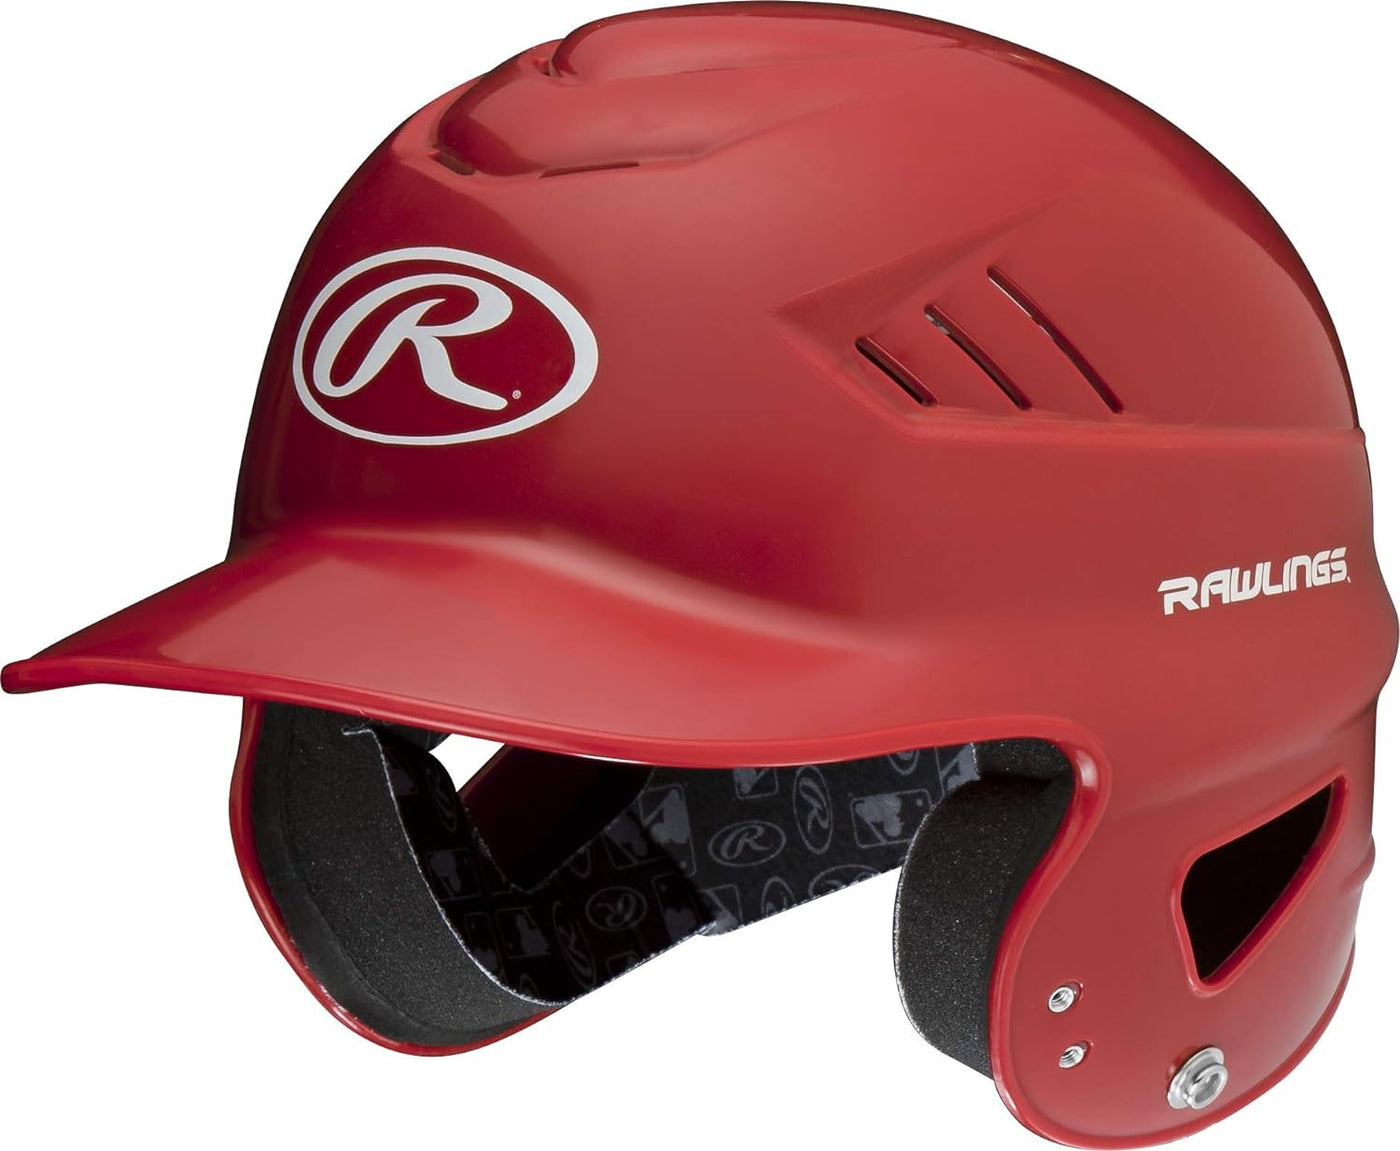 Rawlings Coolflo Batting Helmet Scarlet